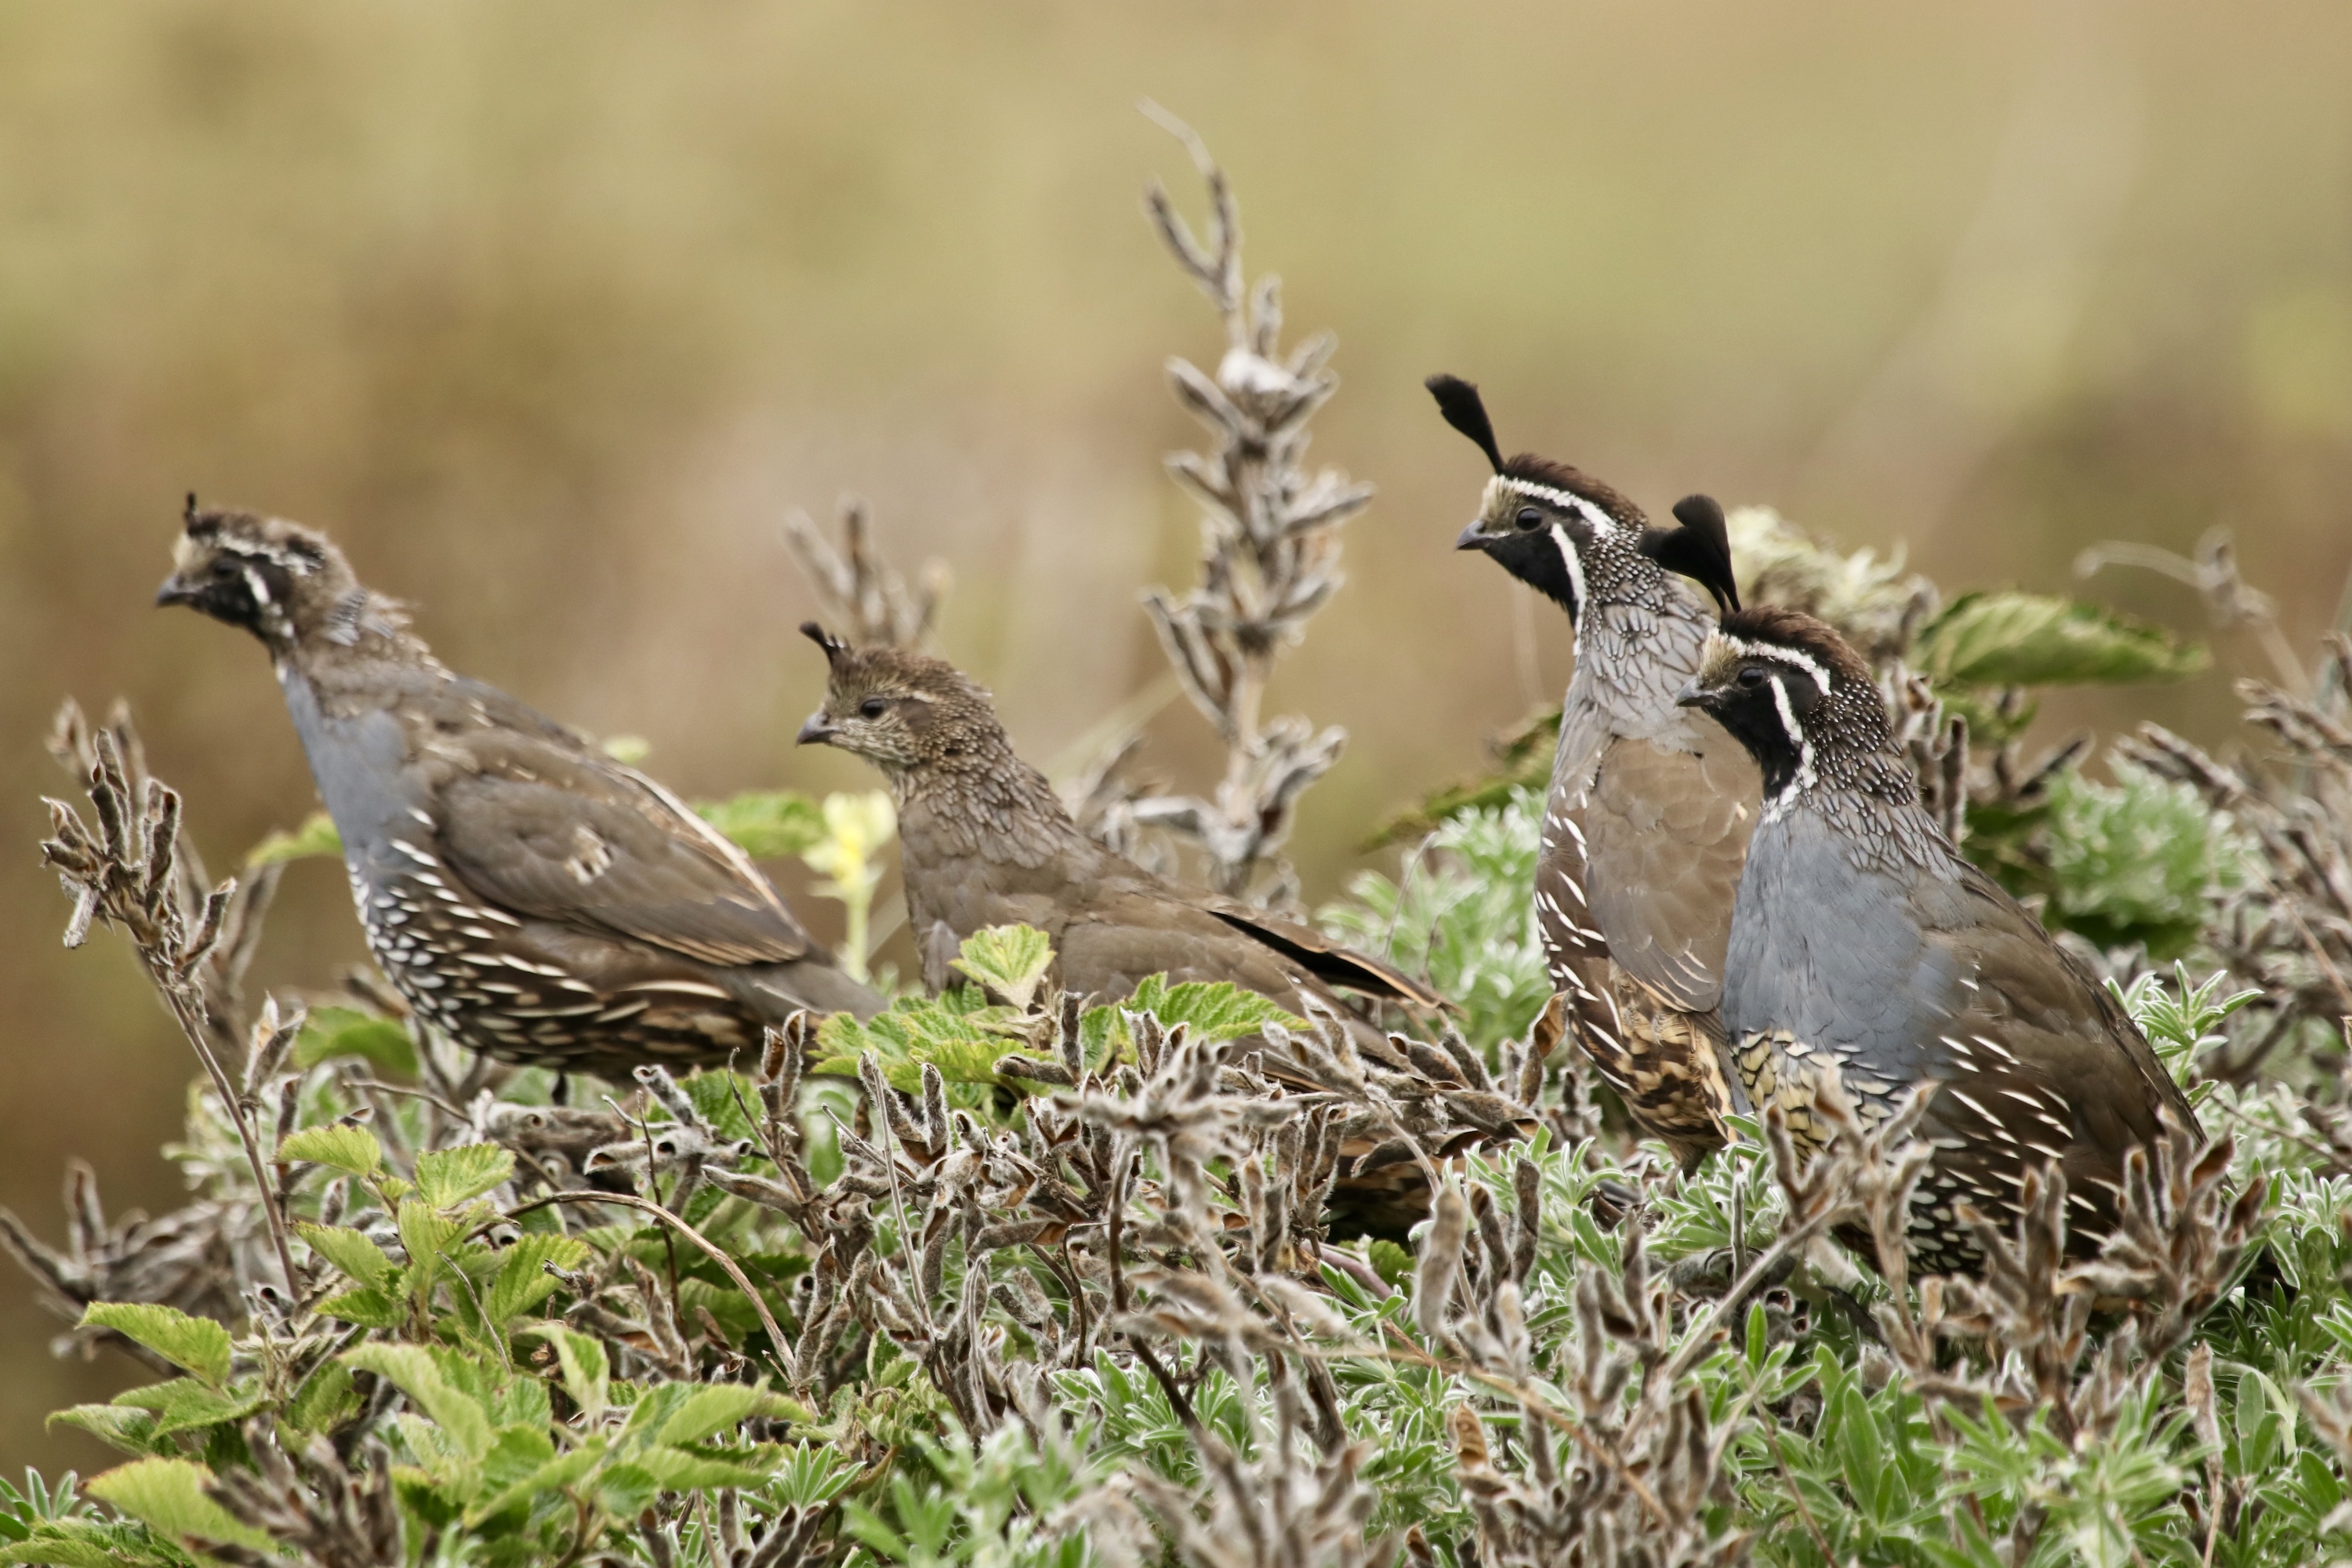 A trio of California quail stand together.